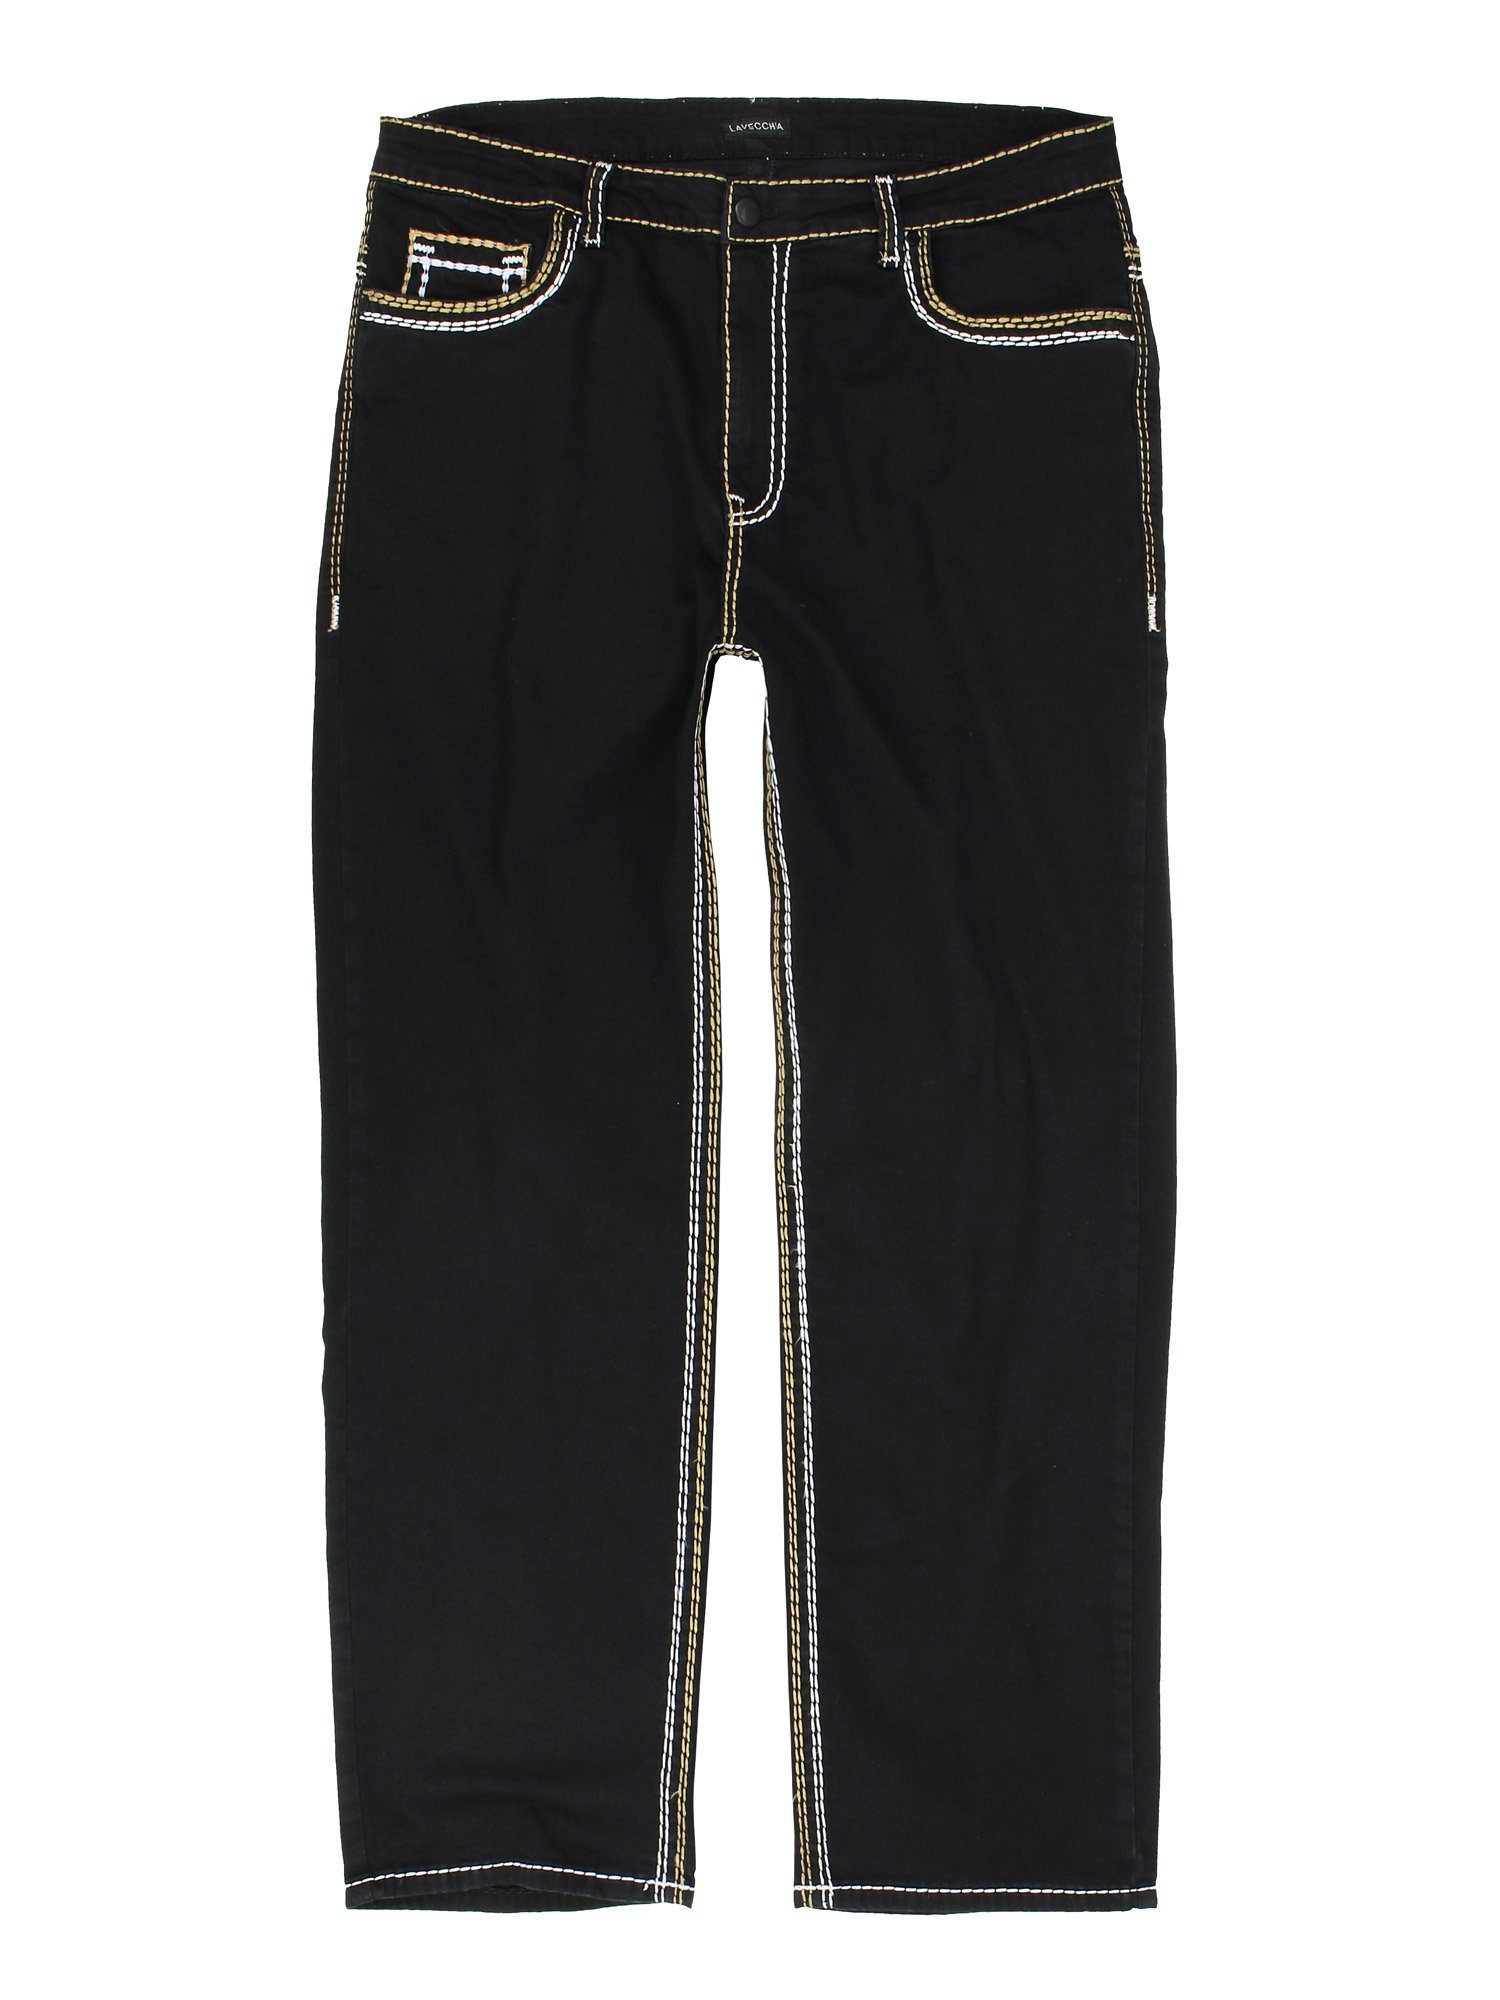 Lavecchia Comfort-fit-Jeans Übergrößen Herren Jeanshose LV-503 Stretch mit Elasthan & dicker Naht schwarz